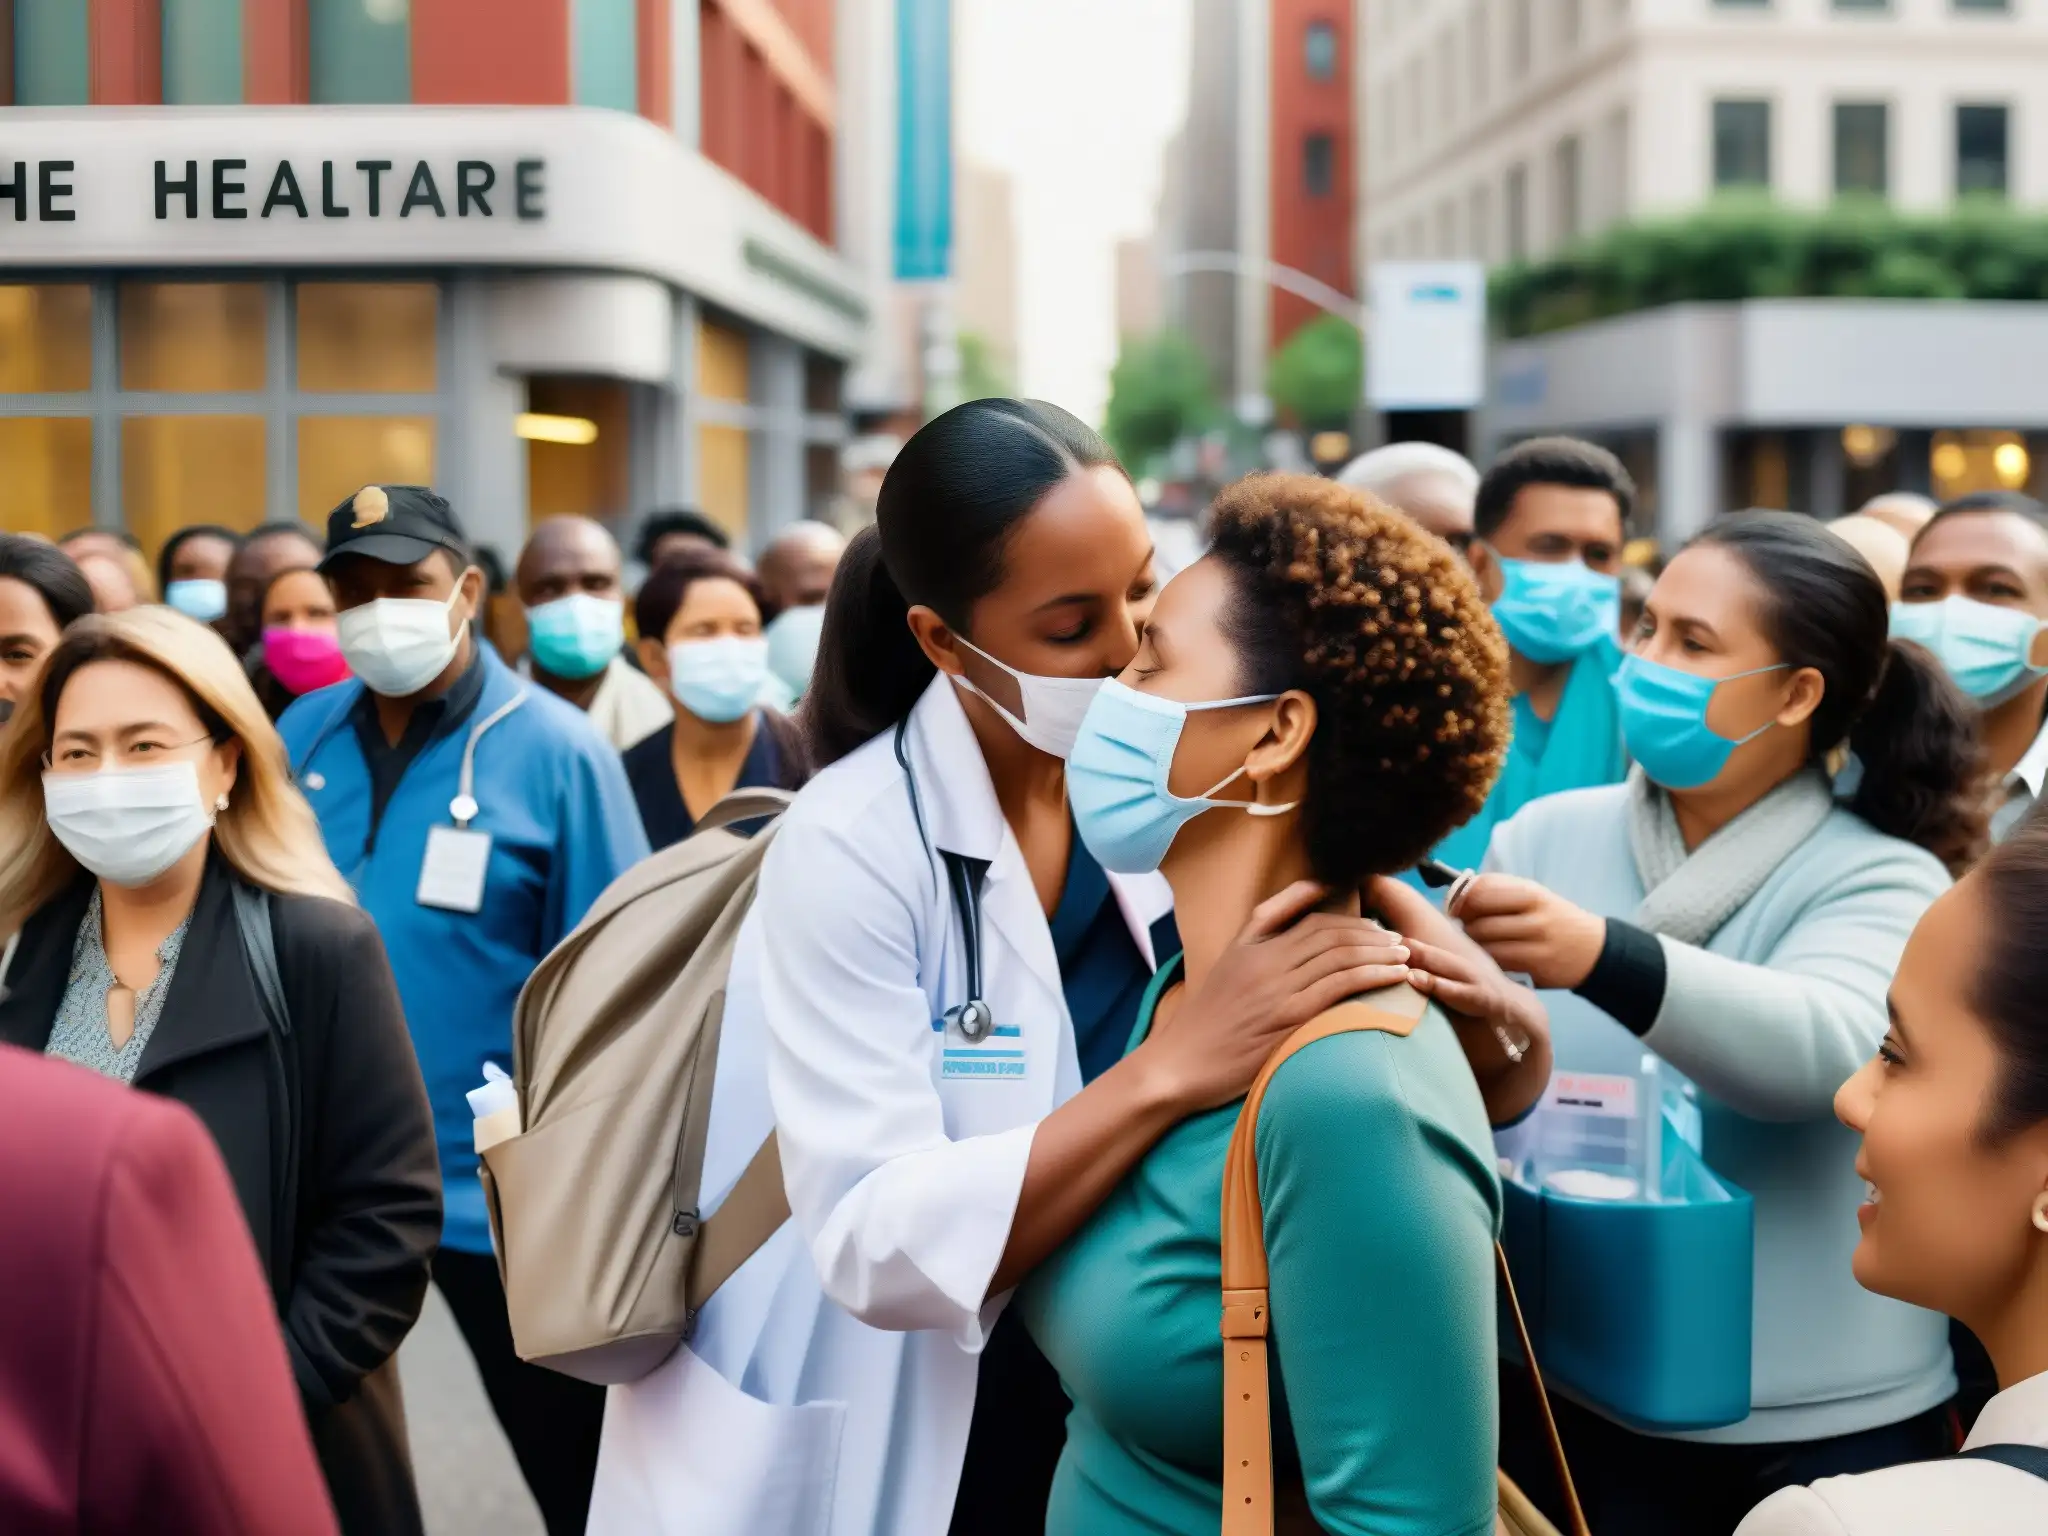 Una trabajadora de la salud administra una vacuna en una concurrida calle urbana, evocando la evolución de mitos urbanos sobre vacunas y salud pública